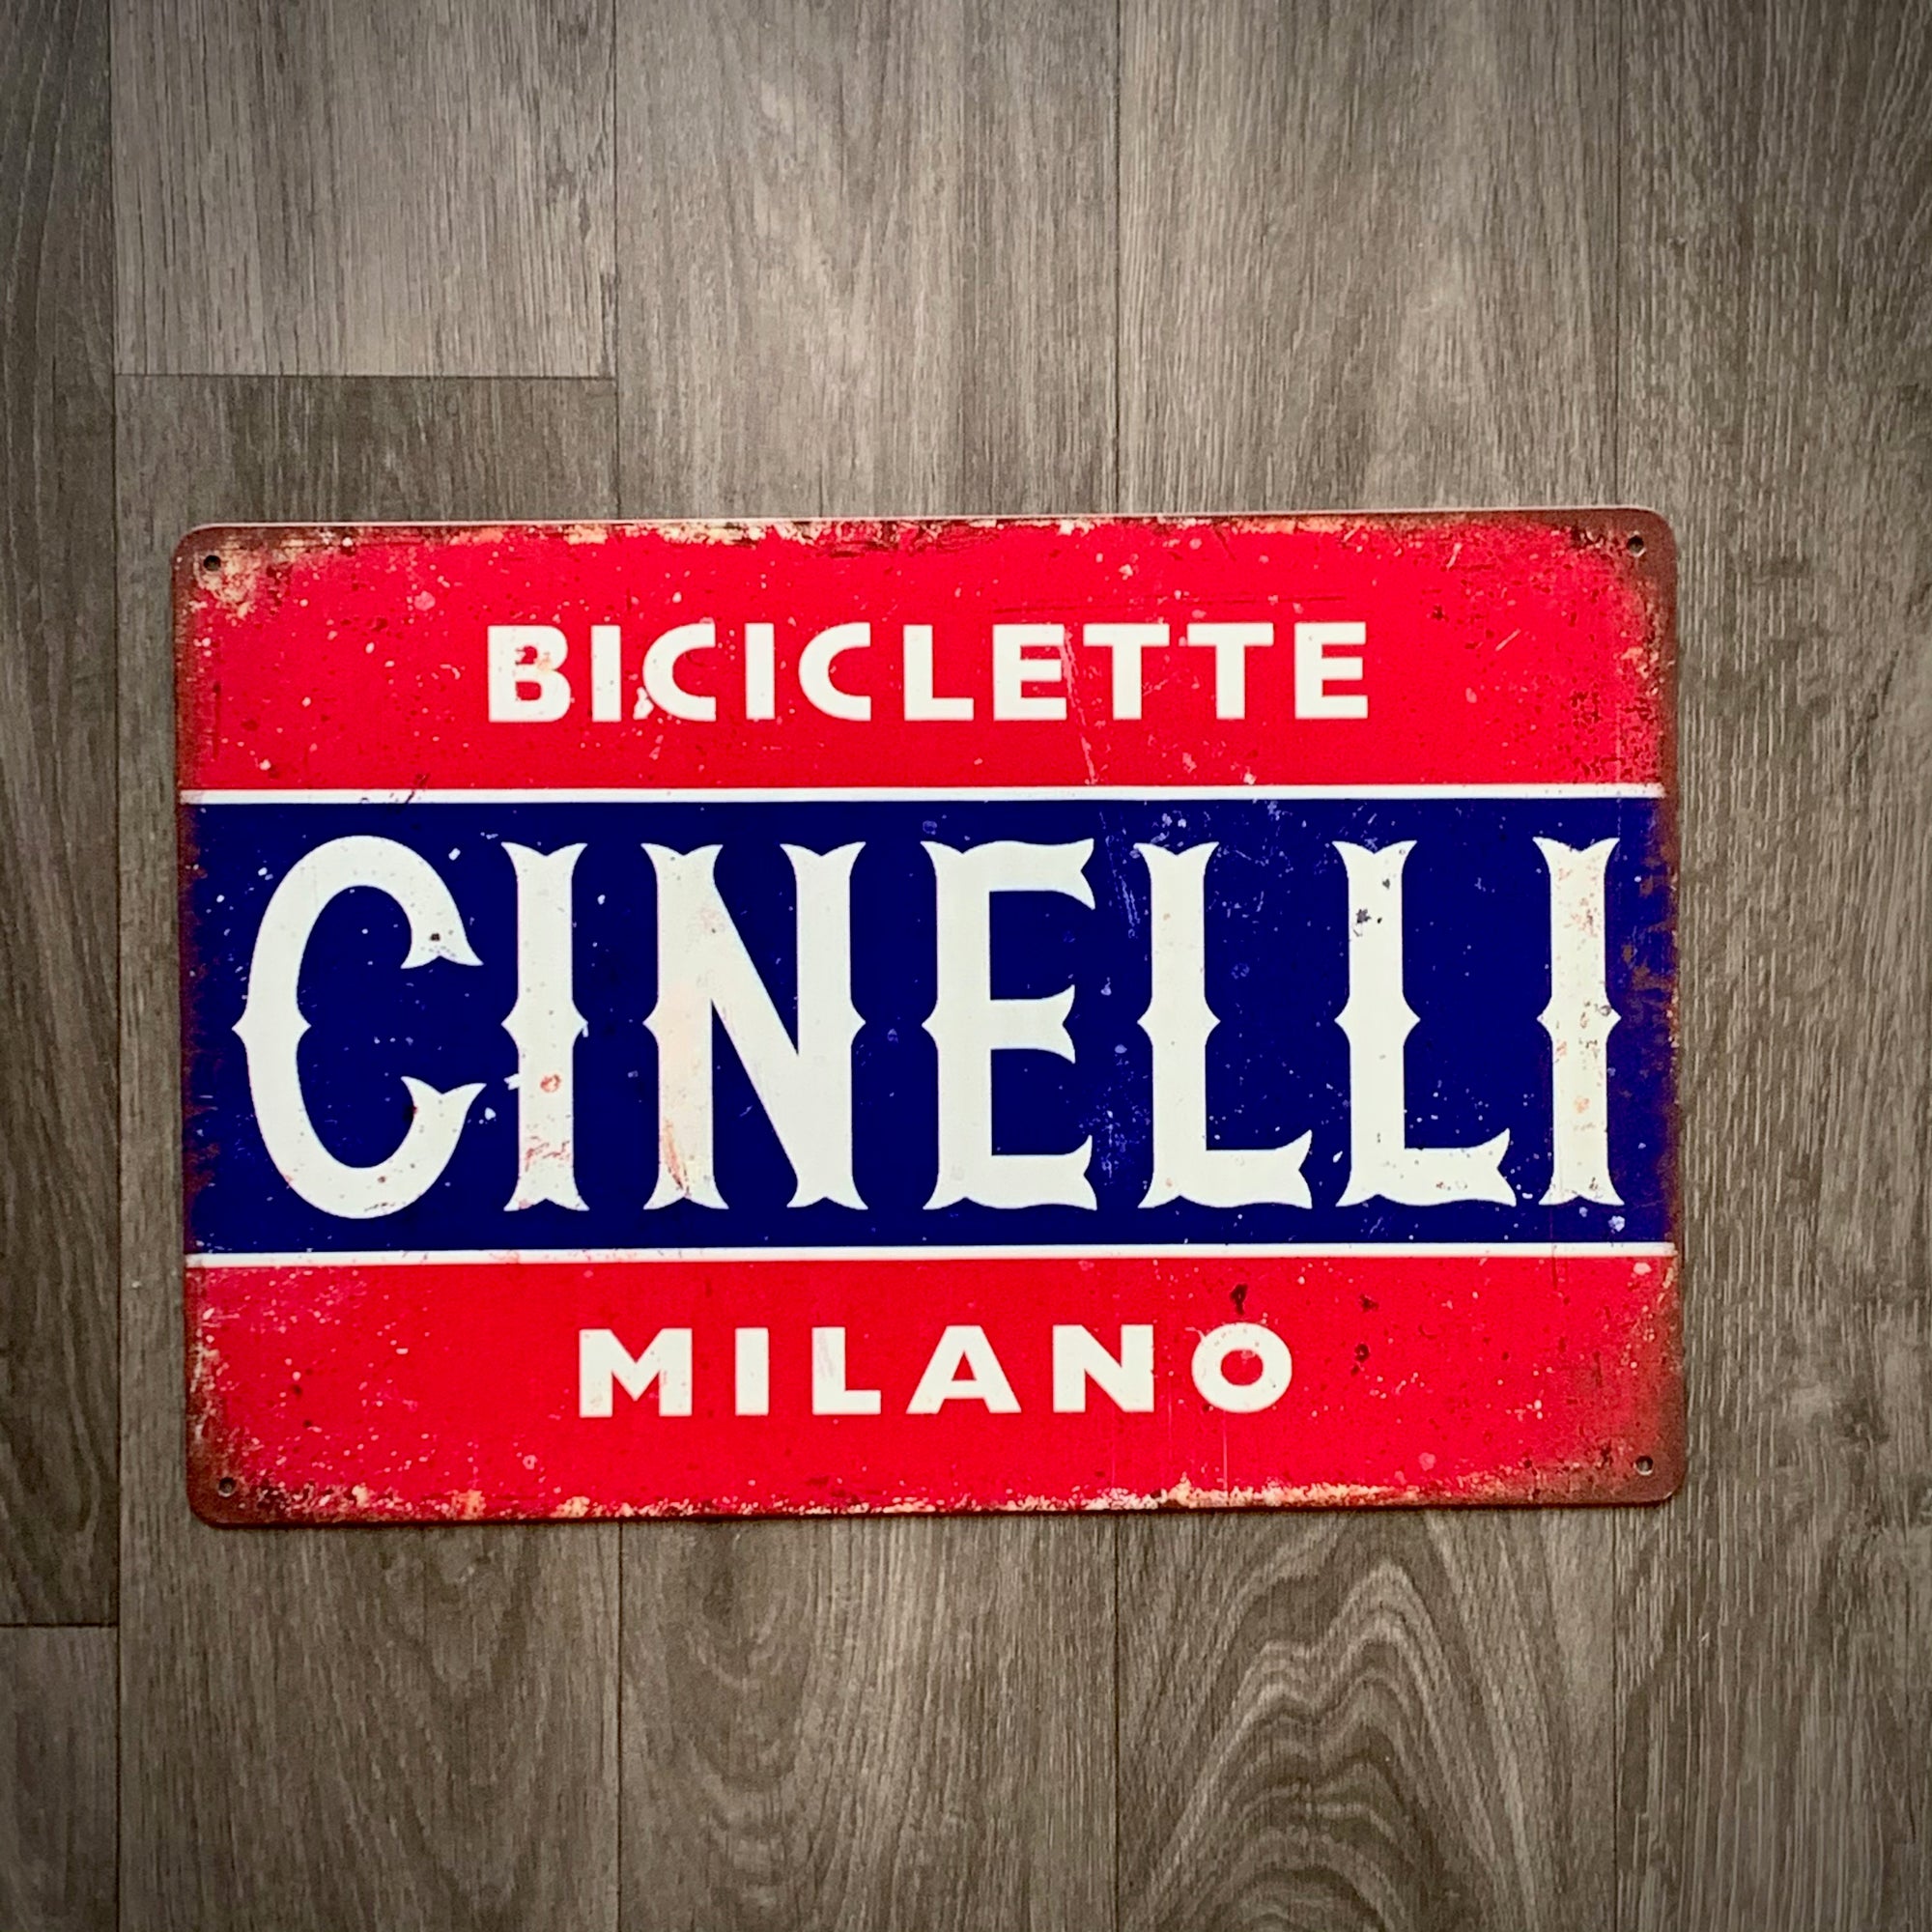 Cinelli Milano Biciclette Retro Cycling Sign